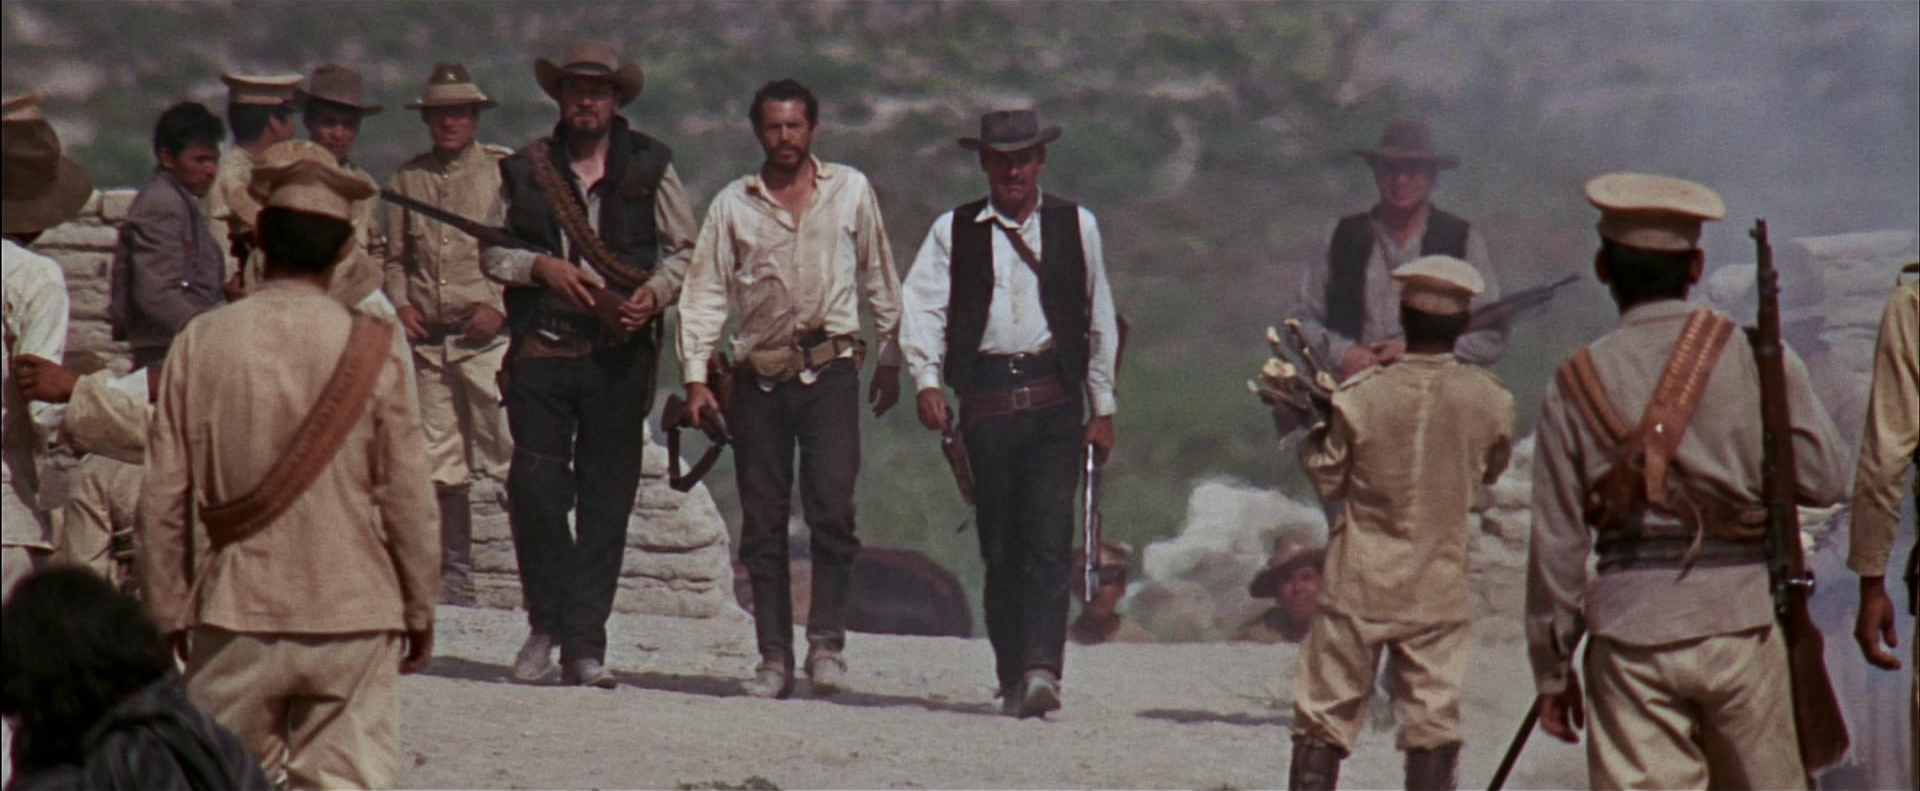 Die Banditen marschieren bewaffnet durch einen mexikanischen Ort.